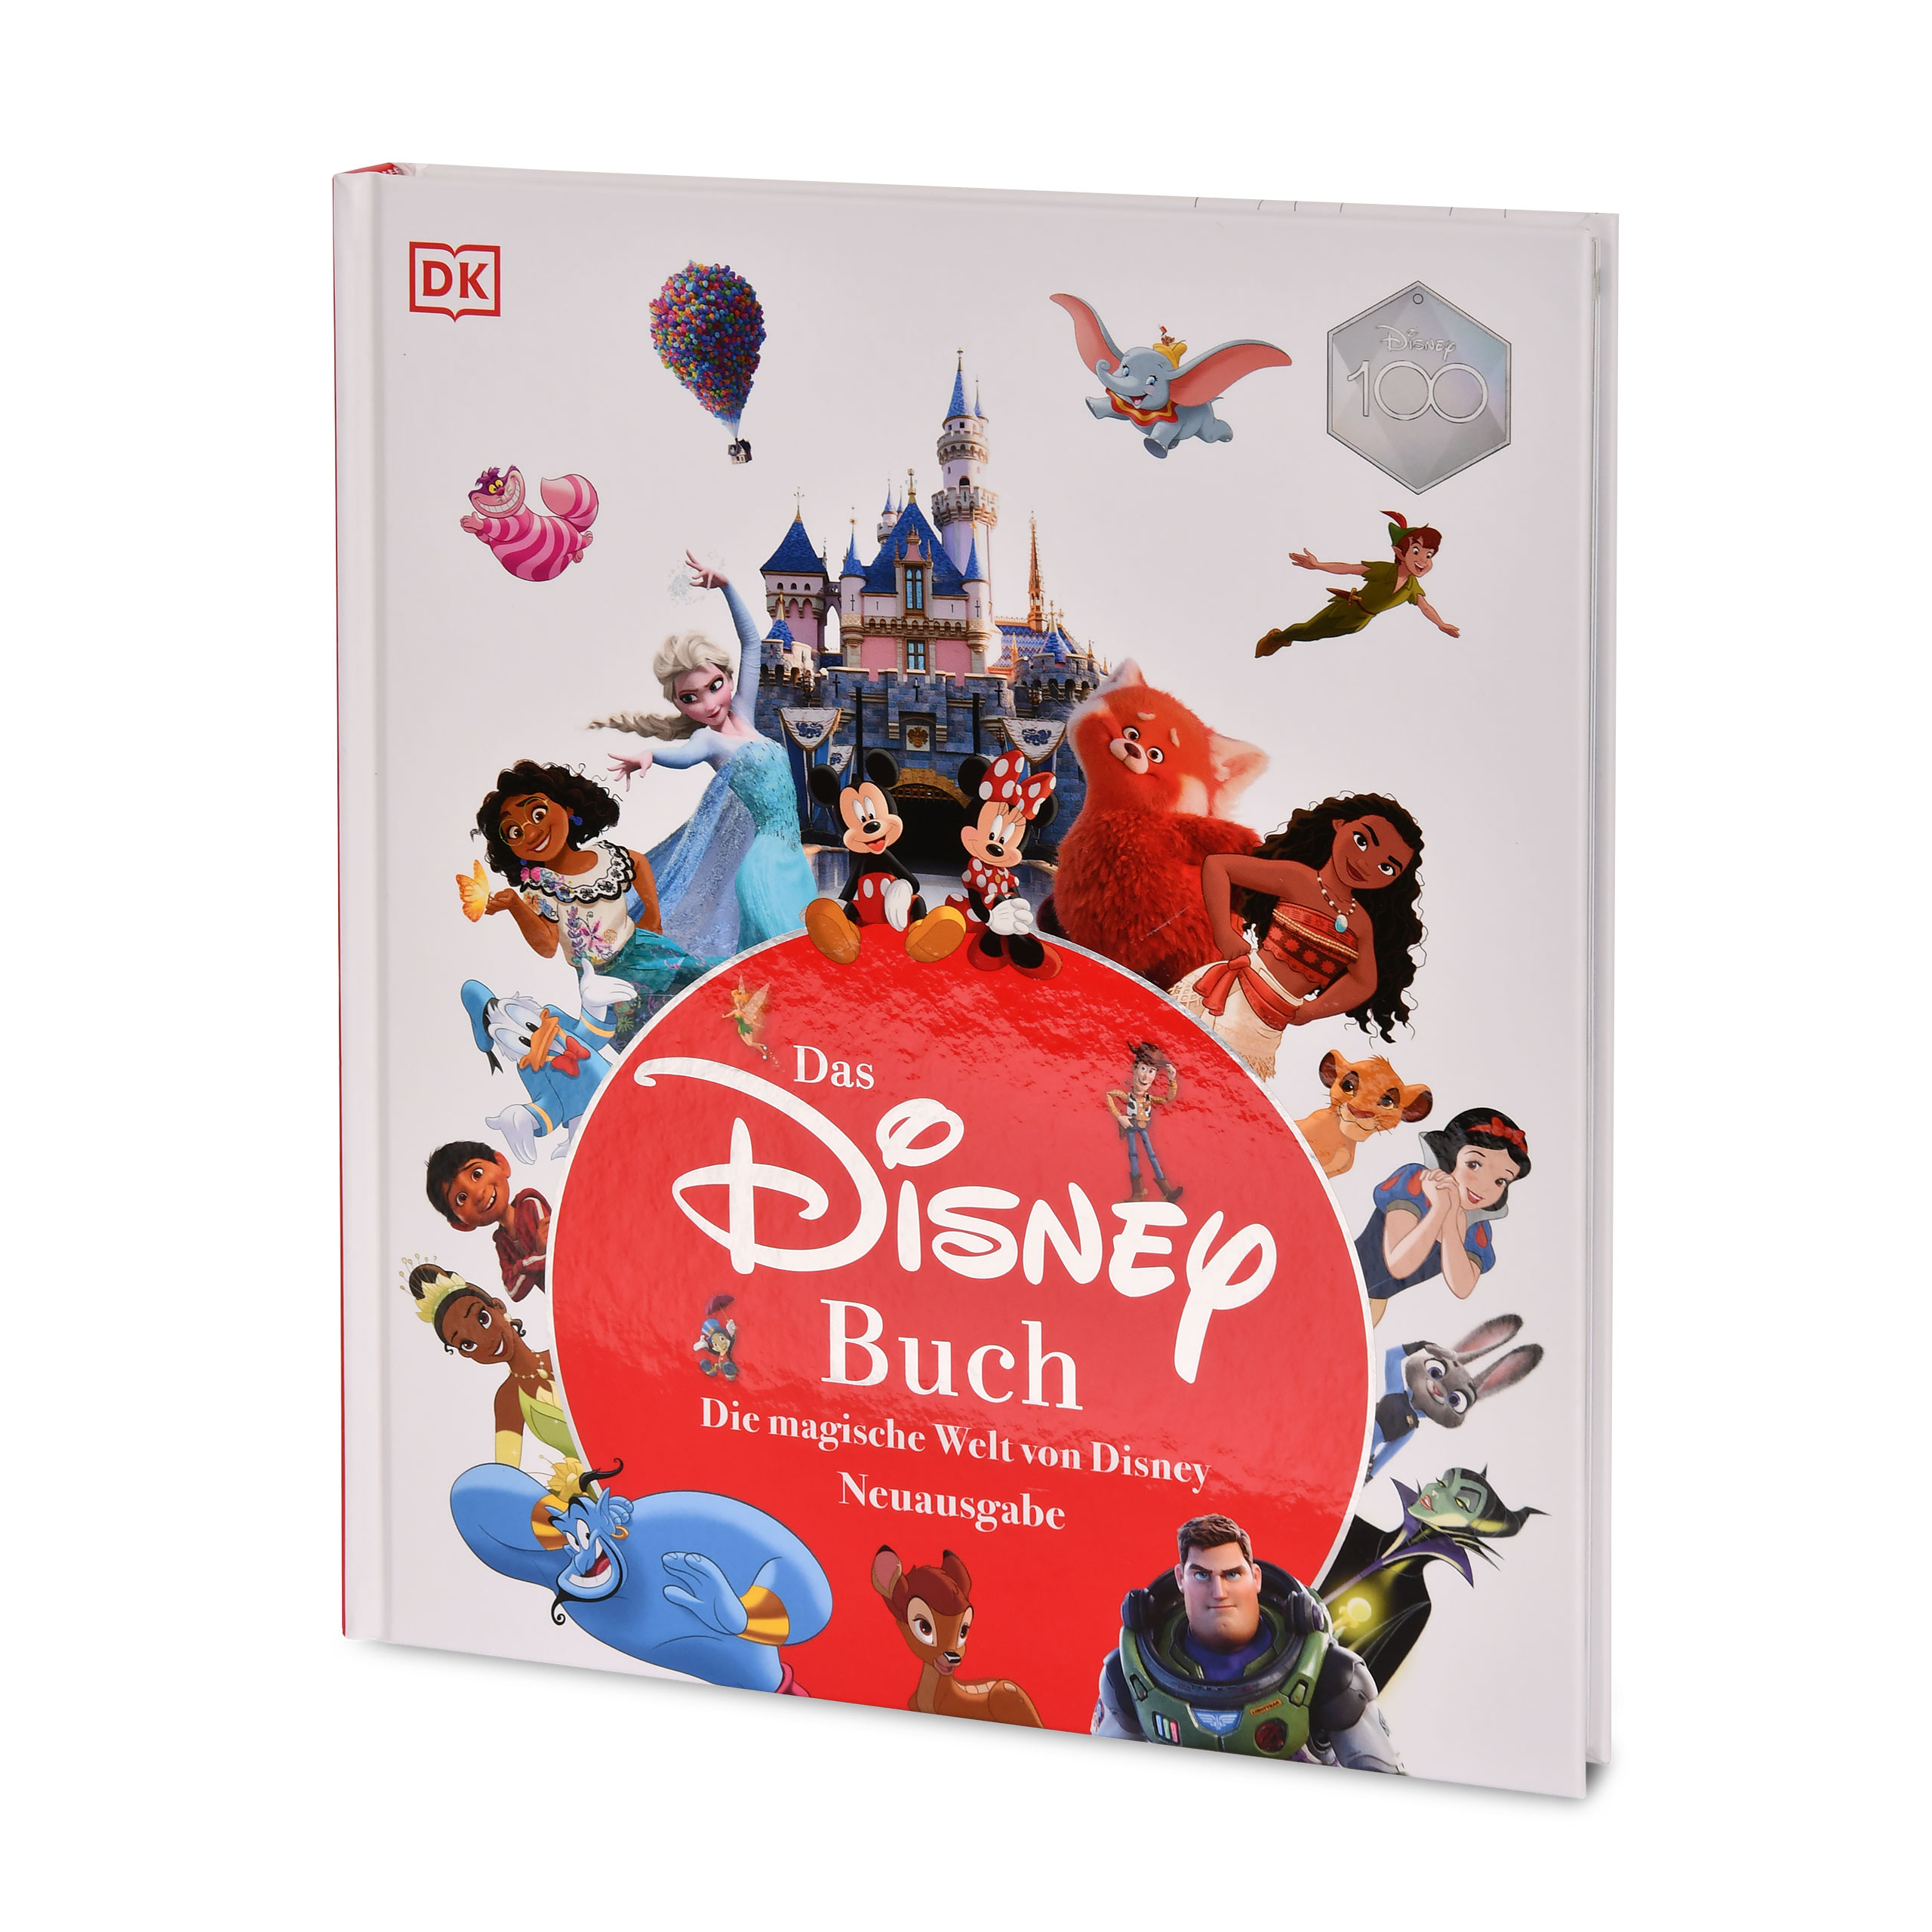 Das Disney Buch - Die magische Welt von Disney